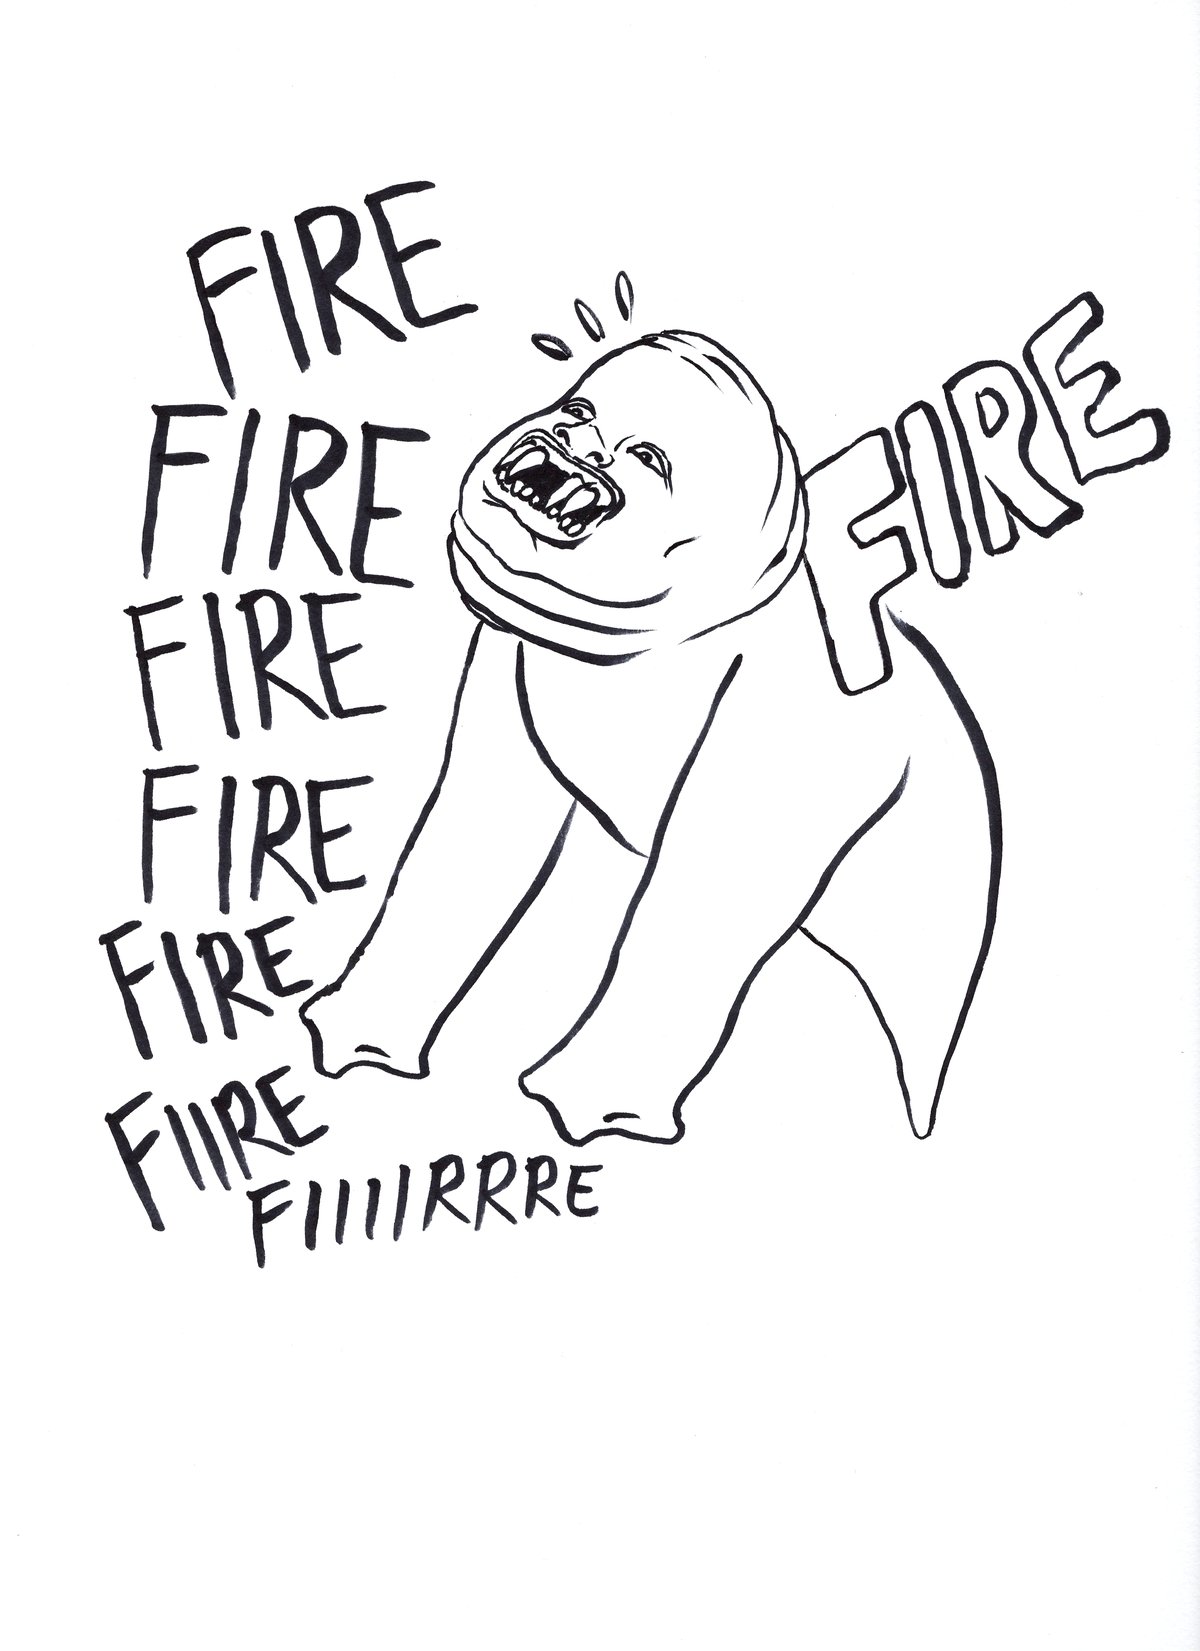 Image of FIRE FIRE FIRE FIRE FIRE FIIRE FIIIIRRRE